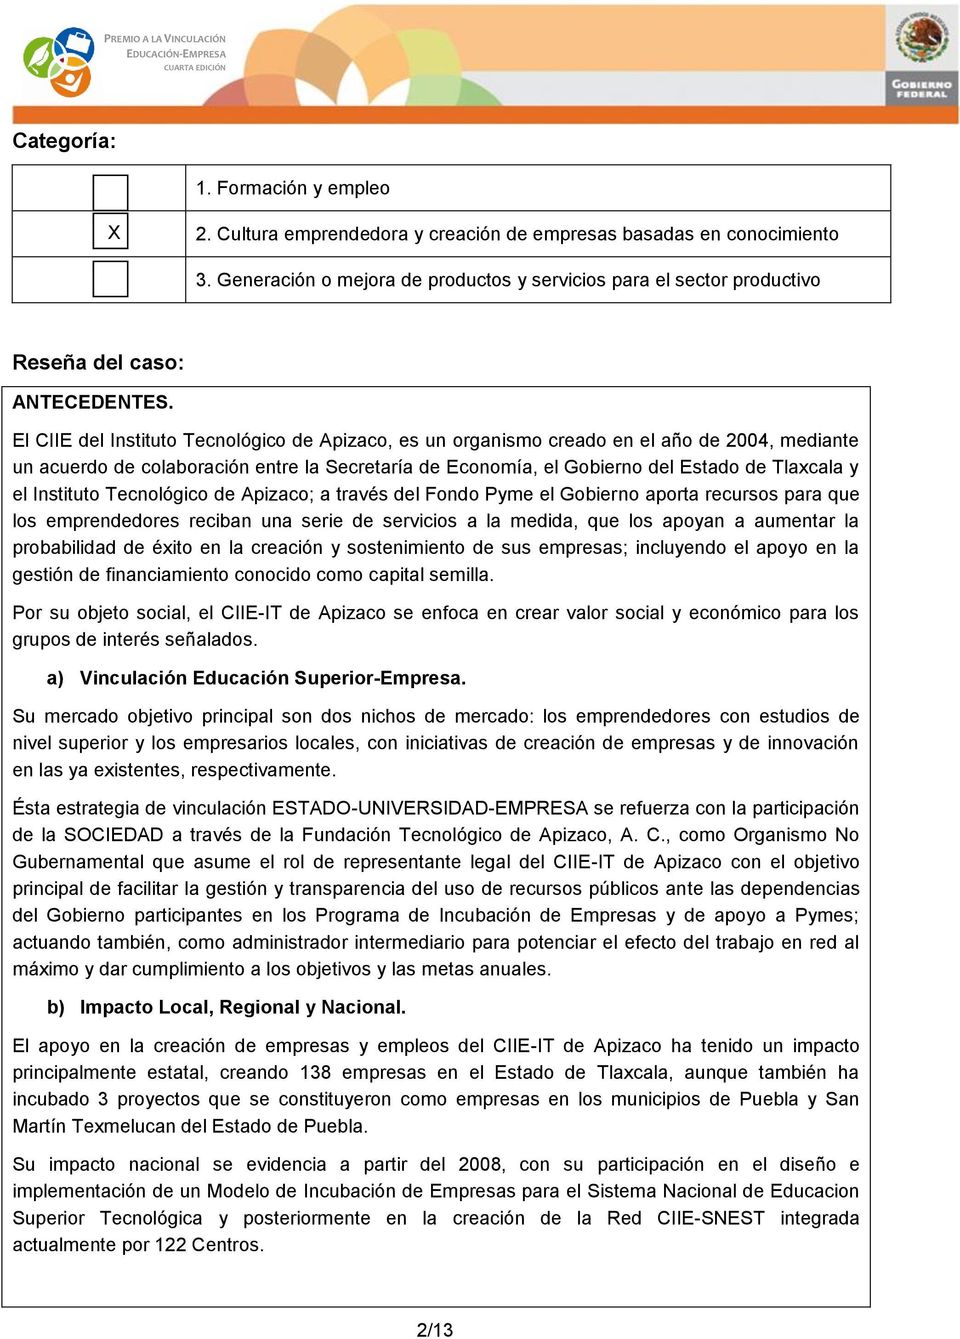 El CIIE del Instituto Tecnológico de Apizaco, es un organismo creado en el año de 2004, mediante un acuerdo de colaboración entre la Secretaría de Economía, el Gobierno del Estado de Tlaxcala y el